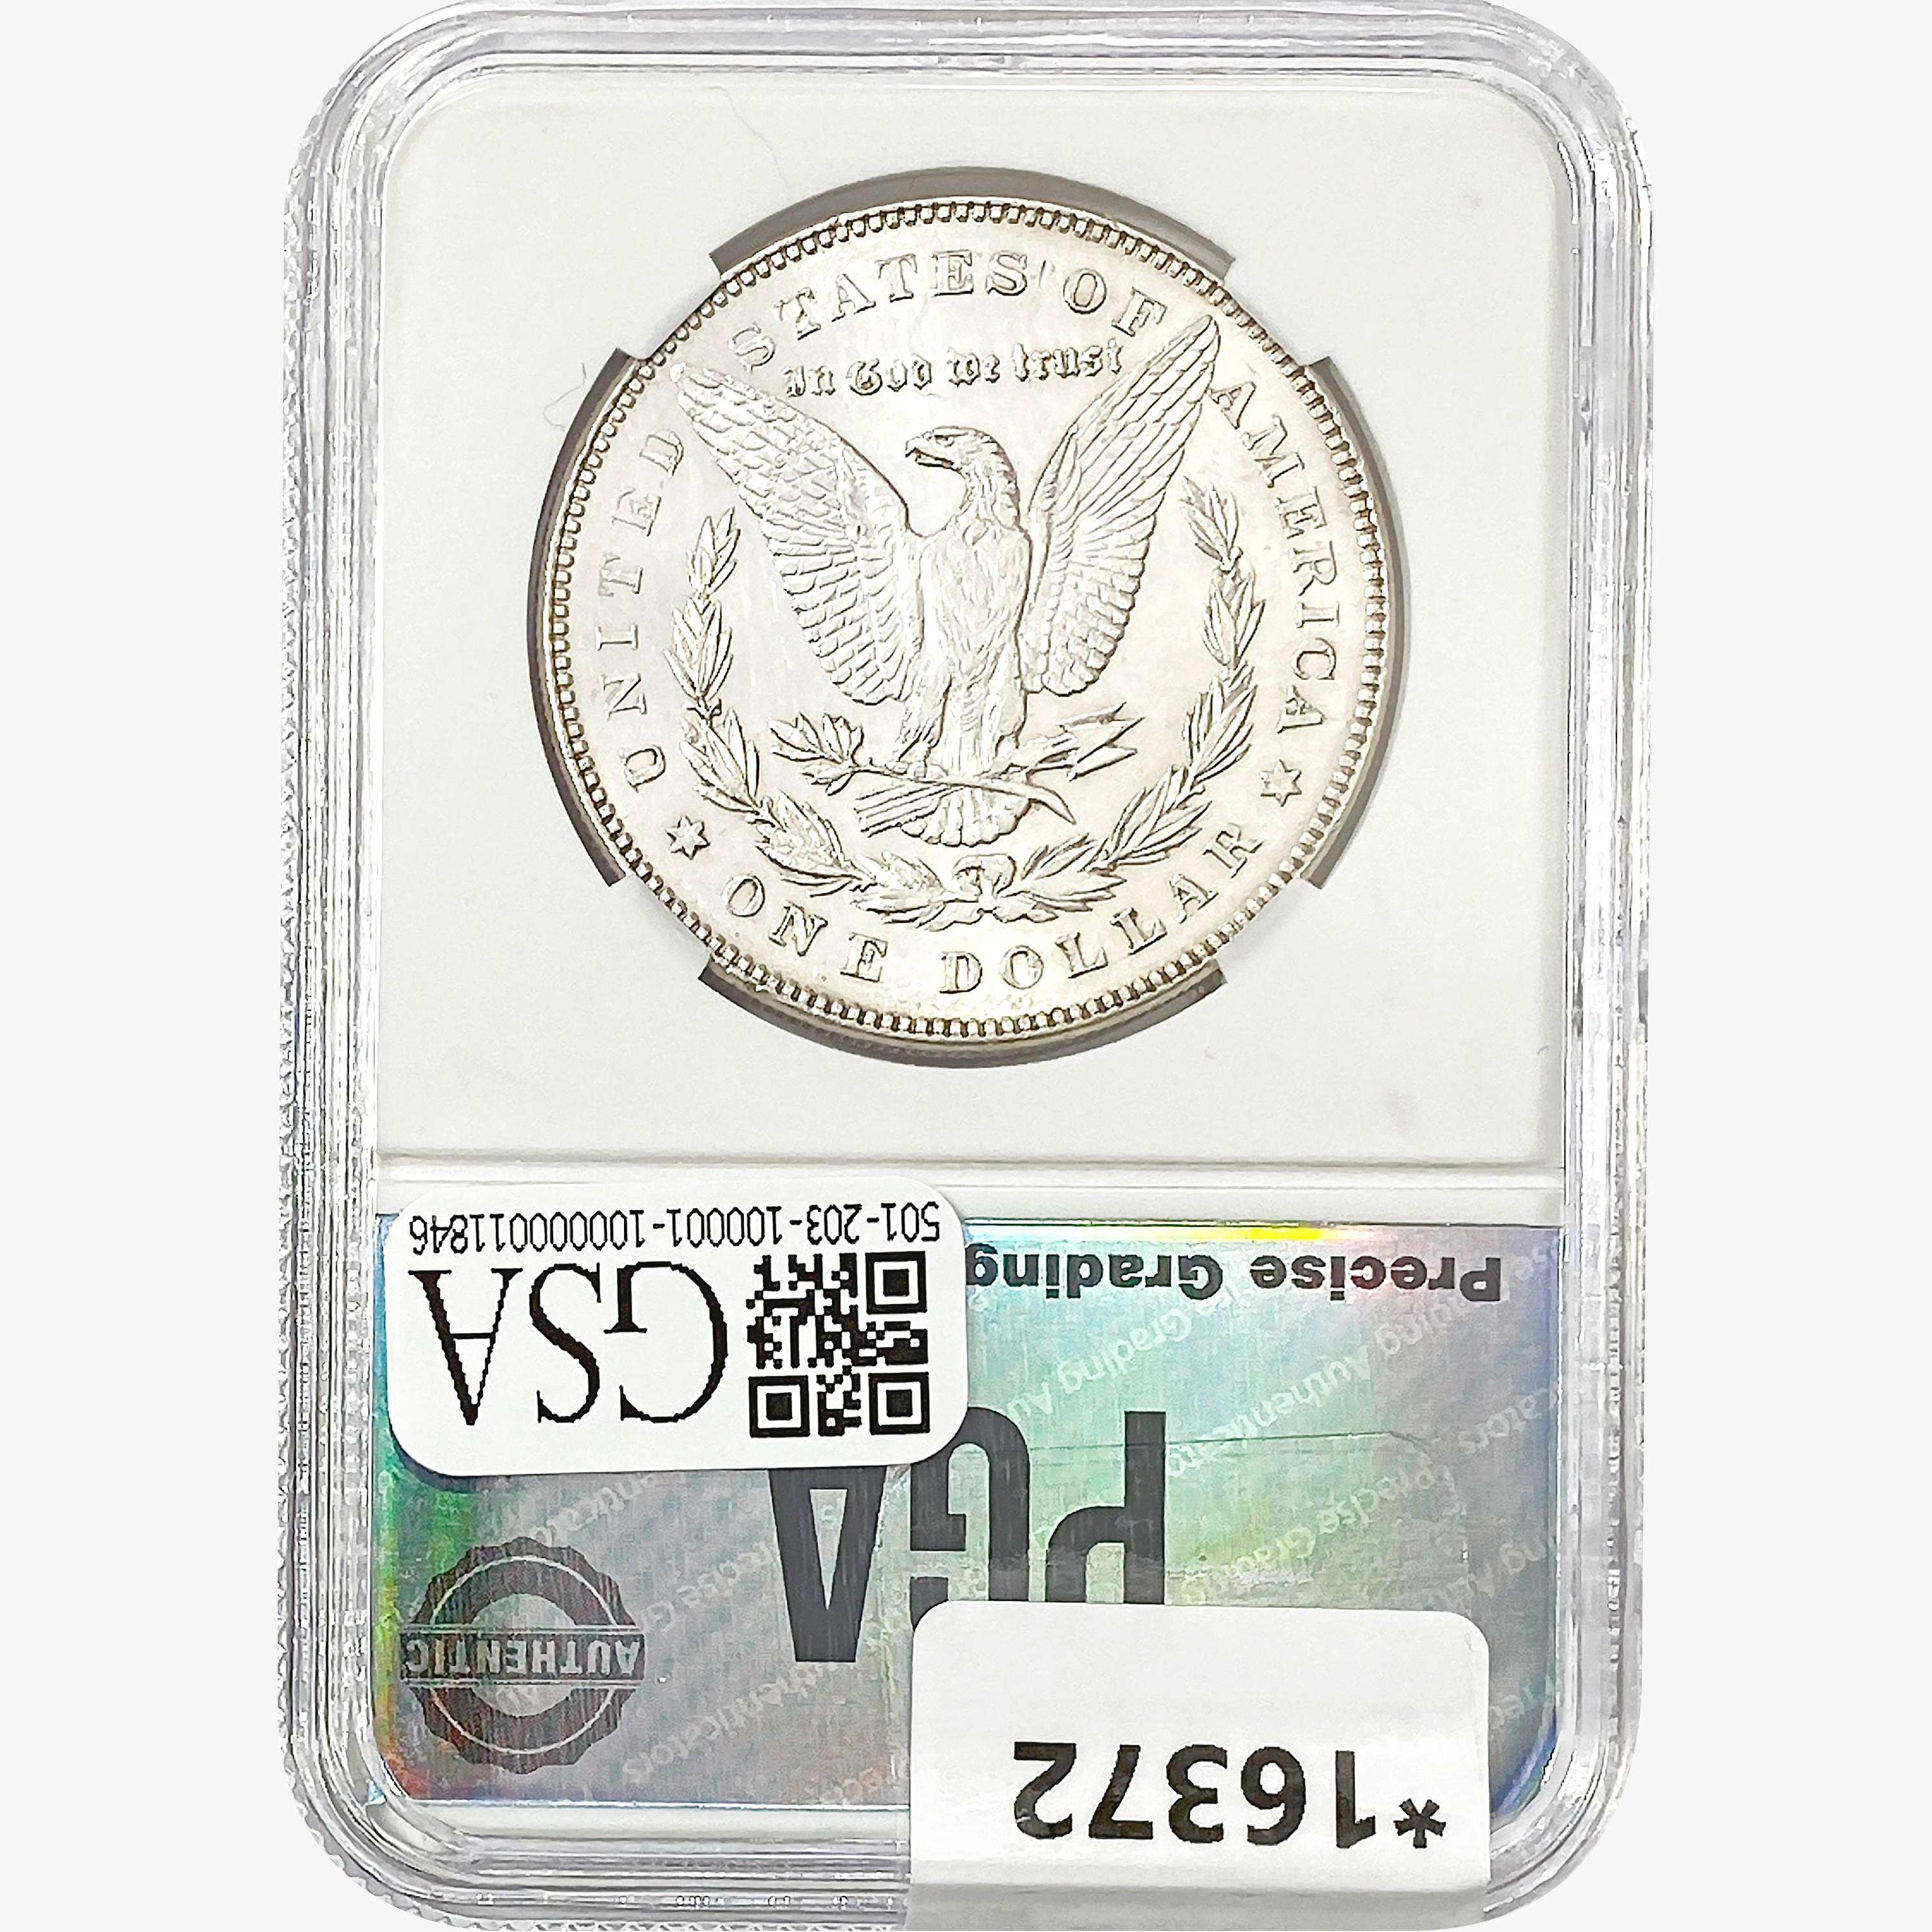 1878 7TF Morgan Silver Dollar PGA MS65+ PL REV 78